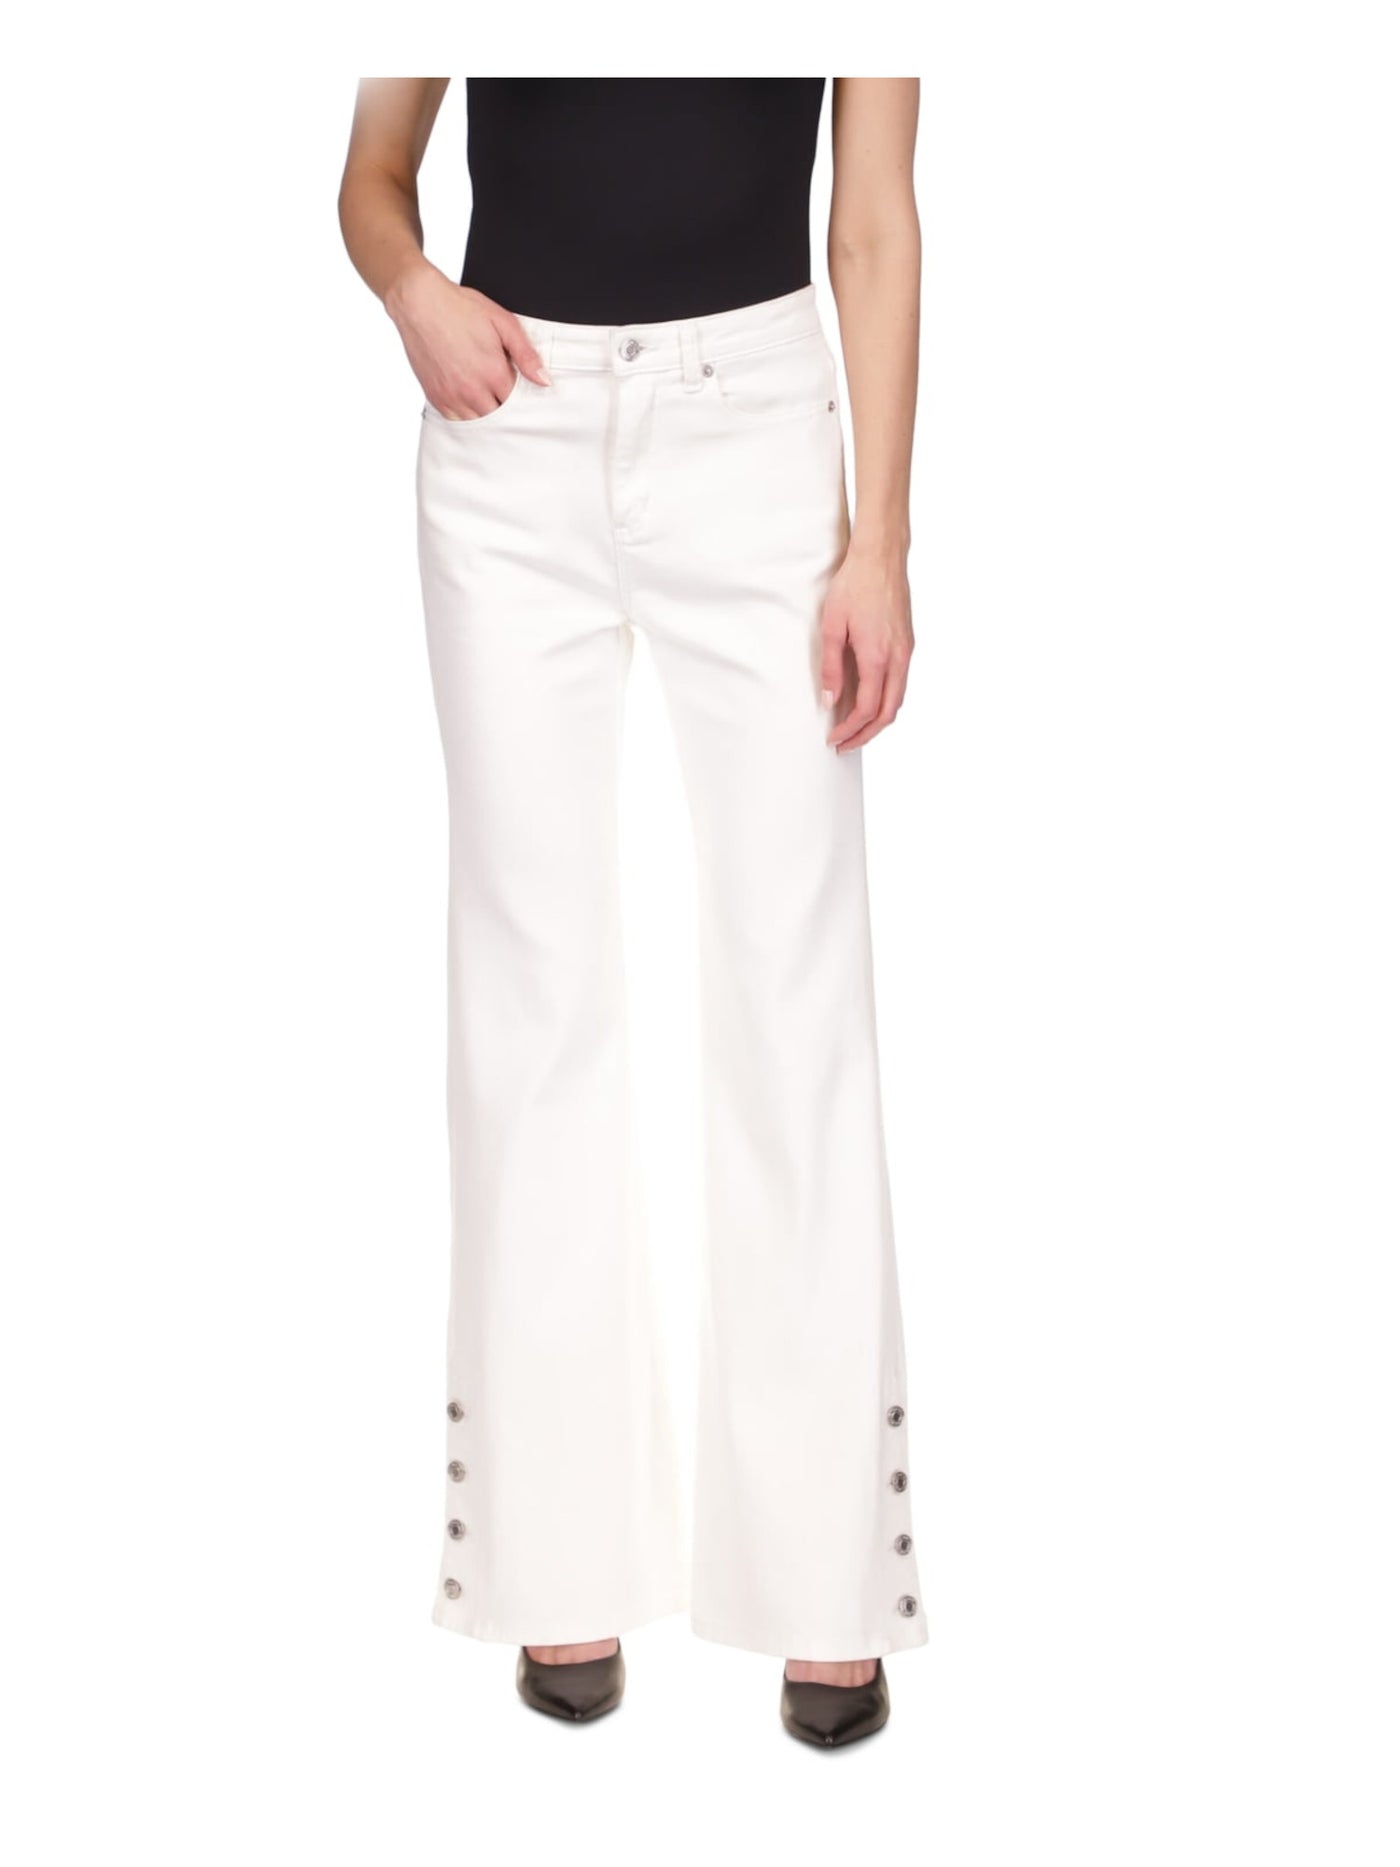 MICHAEL KORS Womens White Zippered Pocketed Button Detail Cuffs High Waist Jeans 8